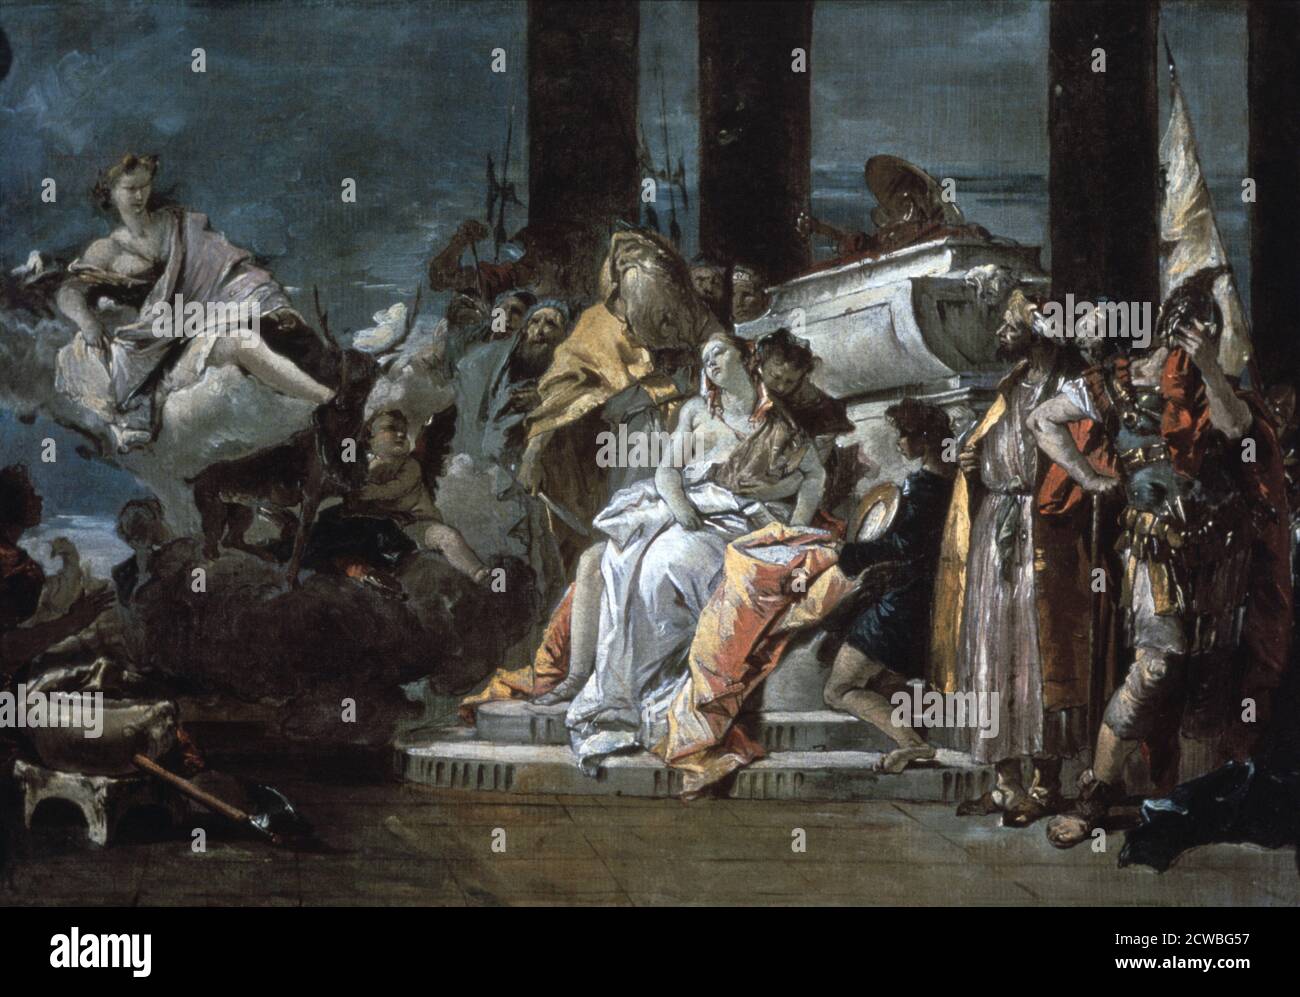 Sacrificio de Ifigenia' por Giovanni Battista Tiepolo, 1735. Artemis, la diosa griega de la caza, observa los preparativos para el sacrificio de Ifigenia, hija de Agamemnon, que ha exigido. Del Museo de Arte de la Universidad de Arizona, Tucson, Arizona, EE.UU. Foto de stock